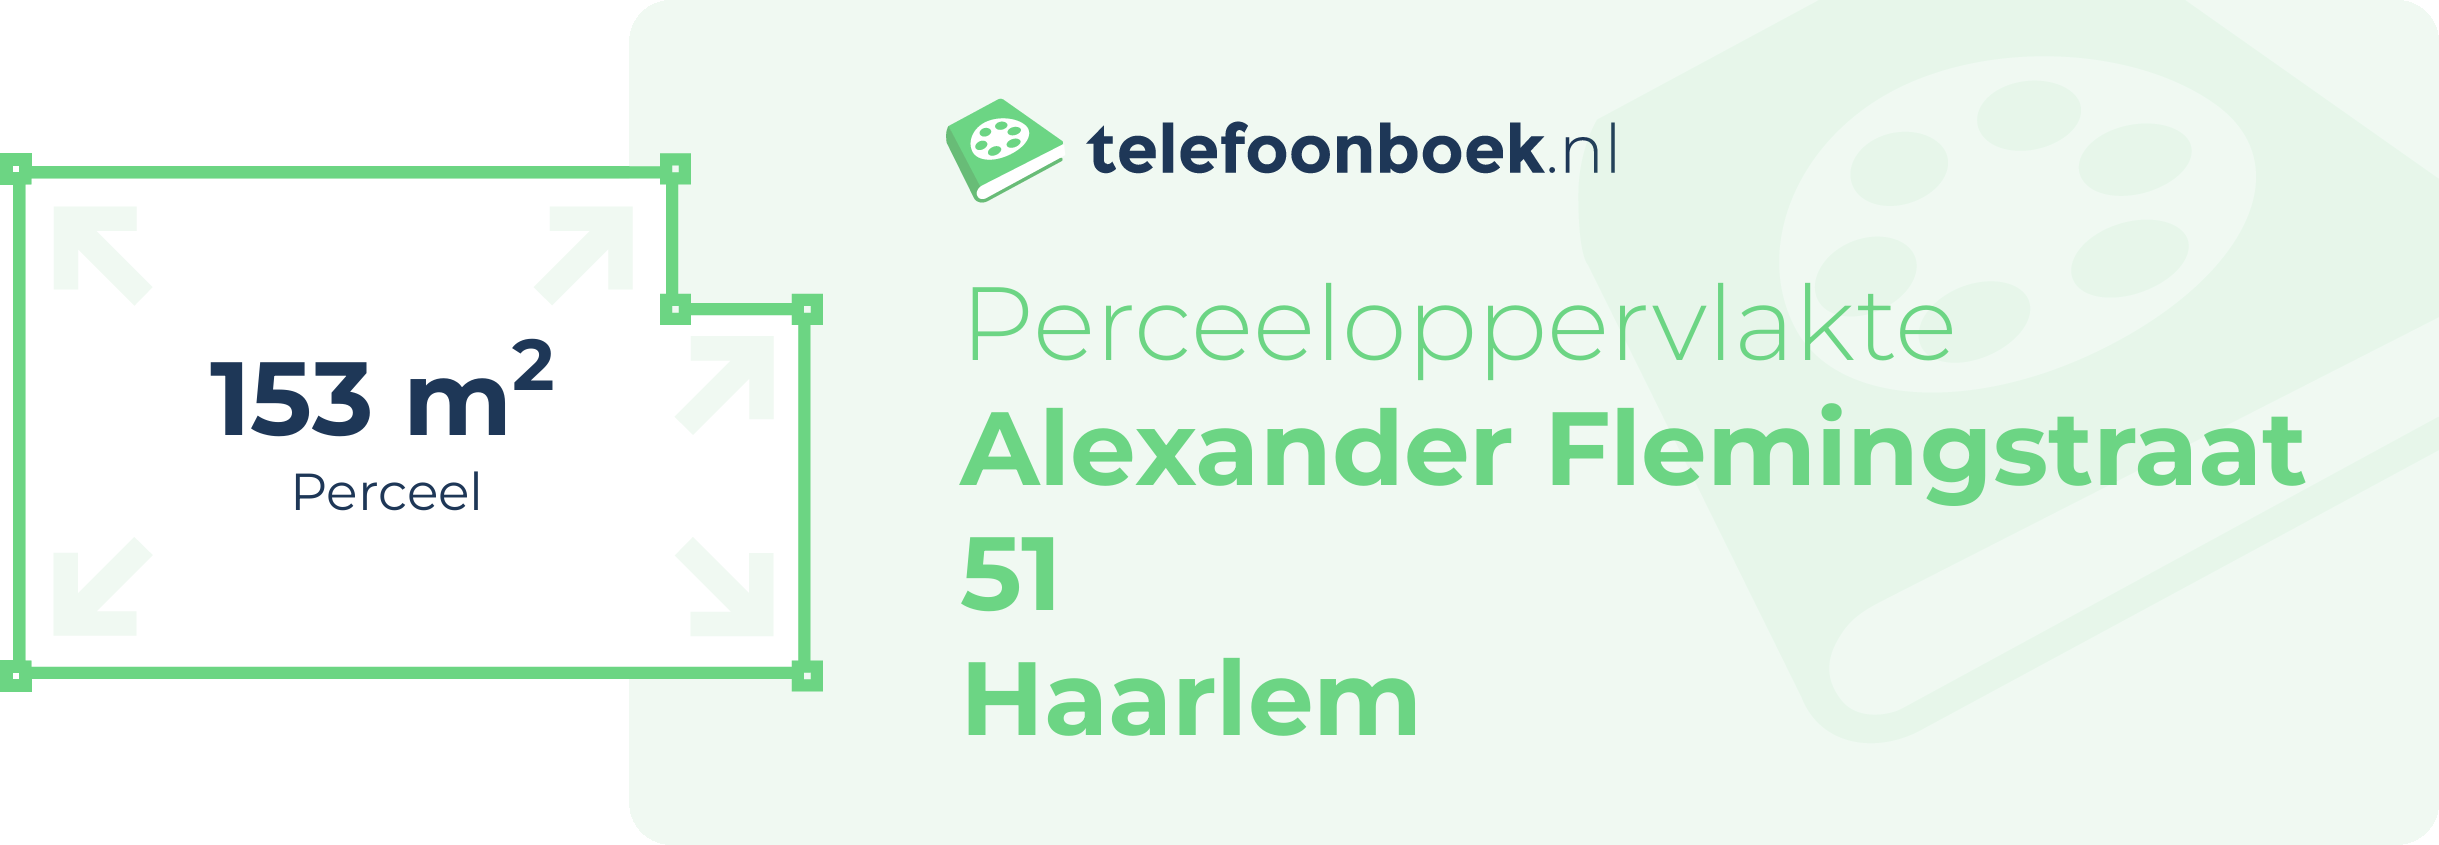 Perceeloppervlakte Alexander Flemingstraat 51 Haarlem